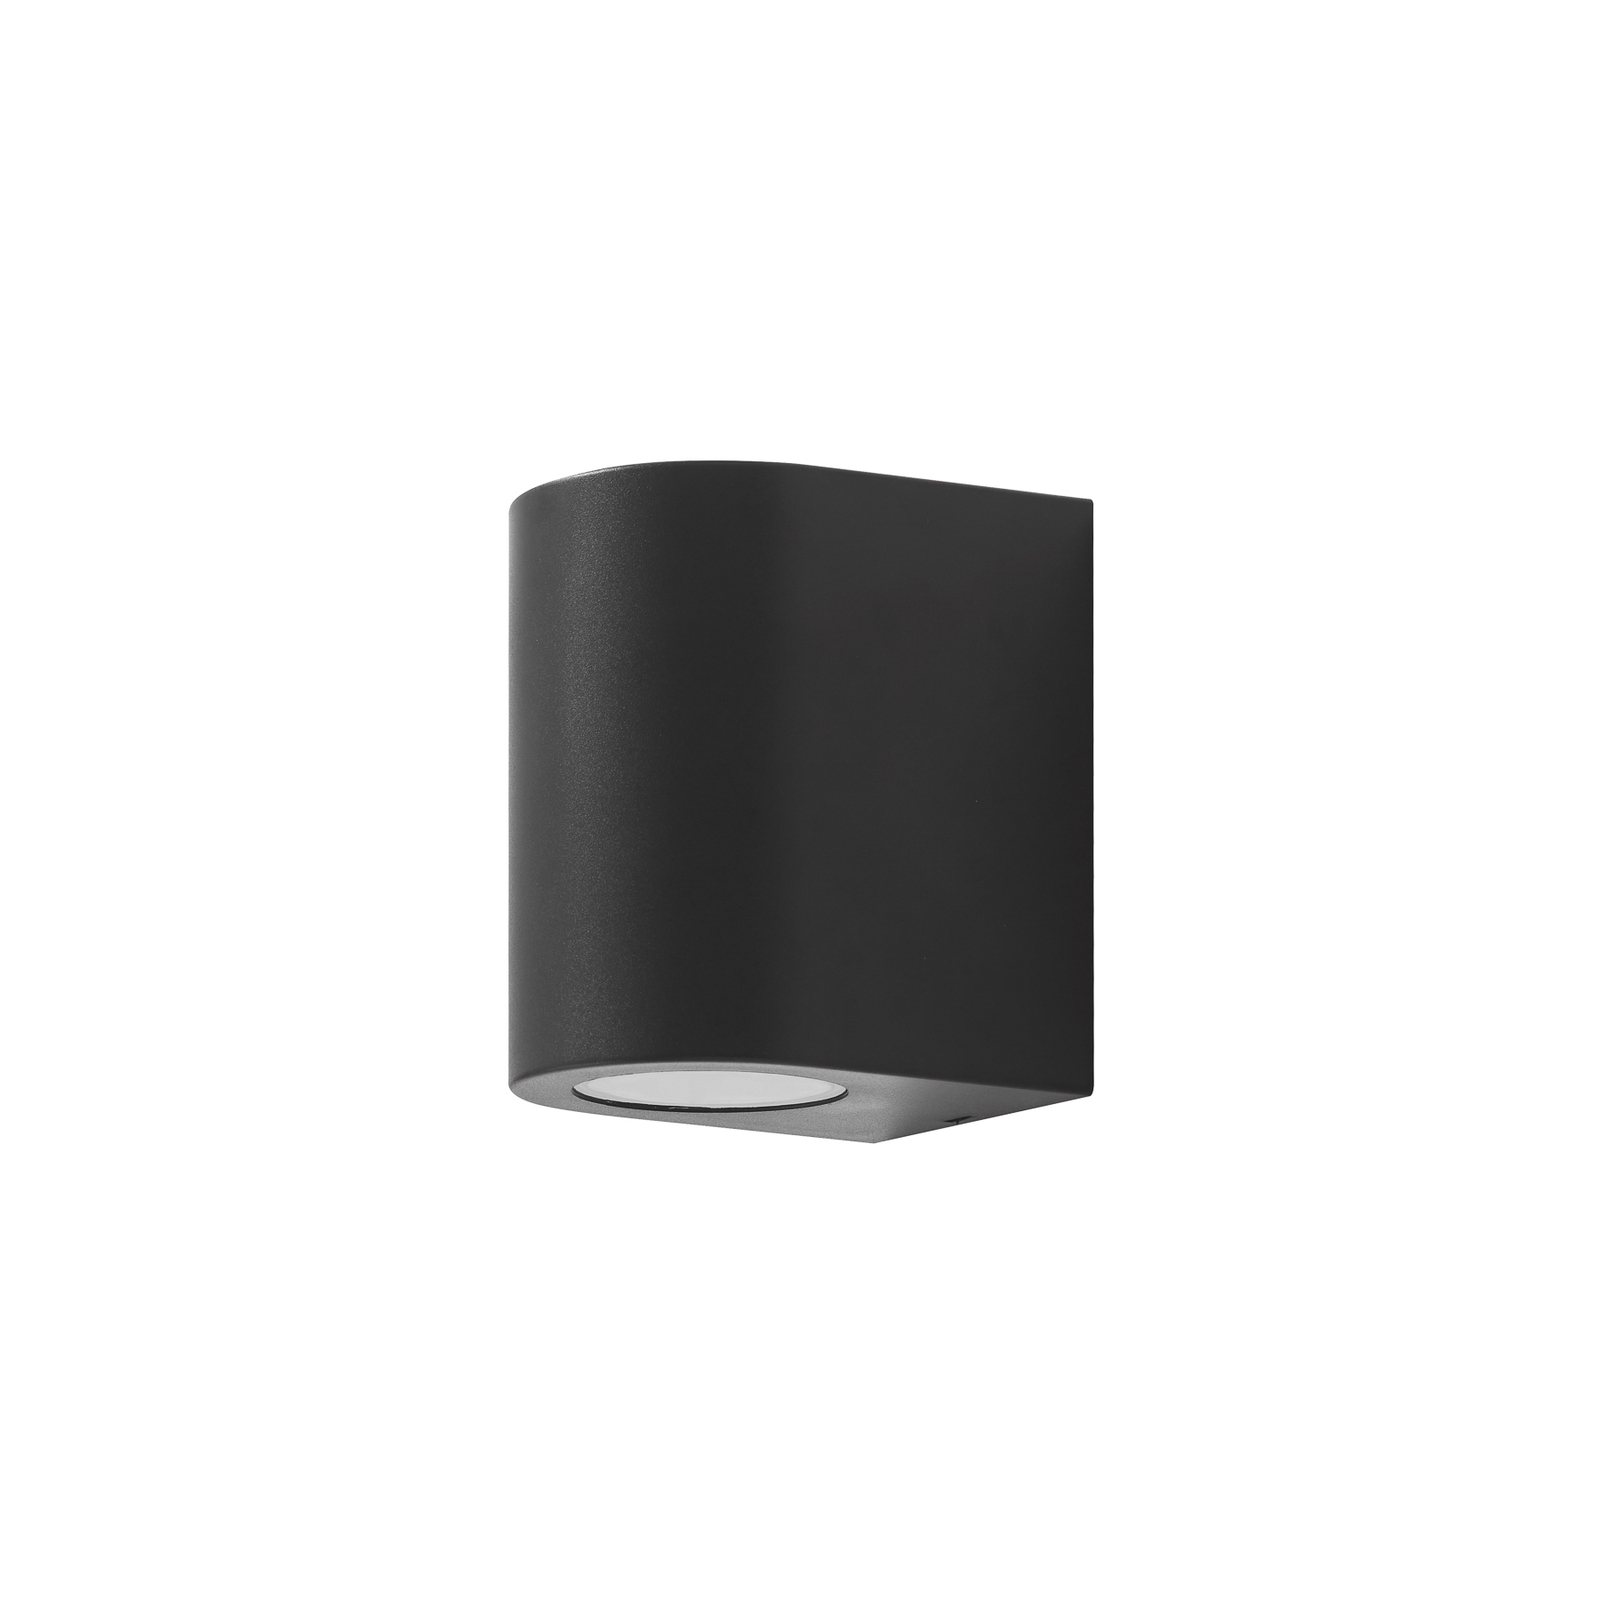 Prios Irfan vanjska zidna svjetiljka okrugla crna 10 cm